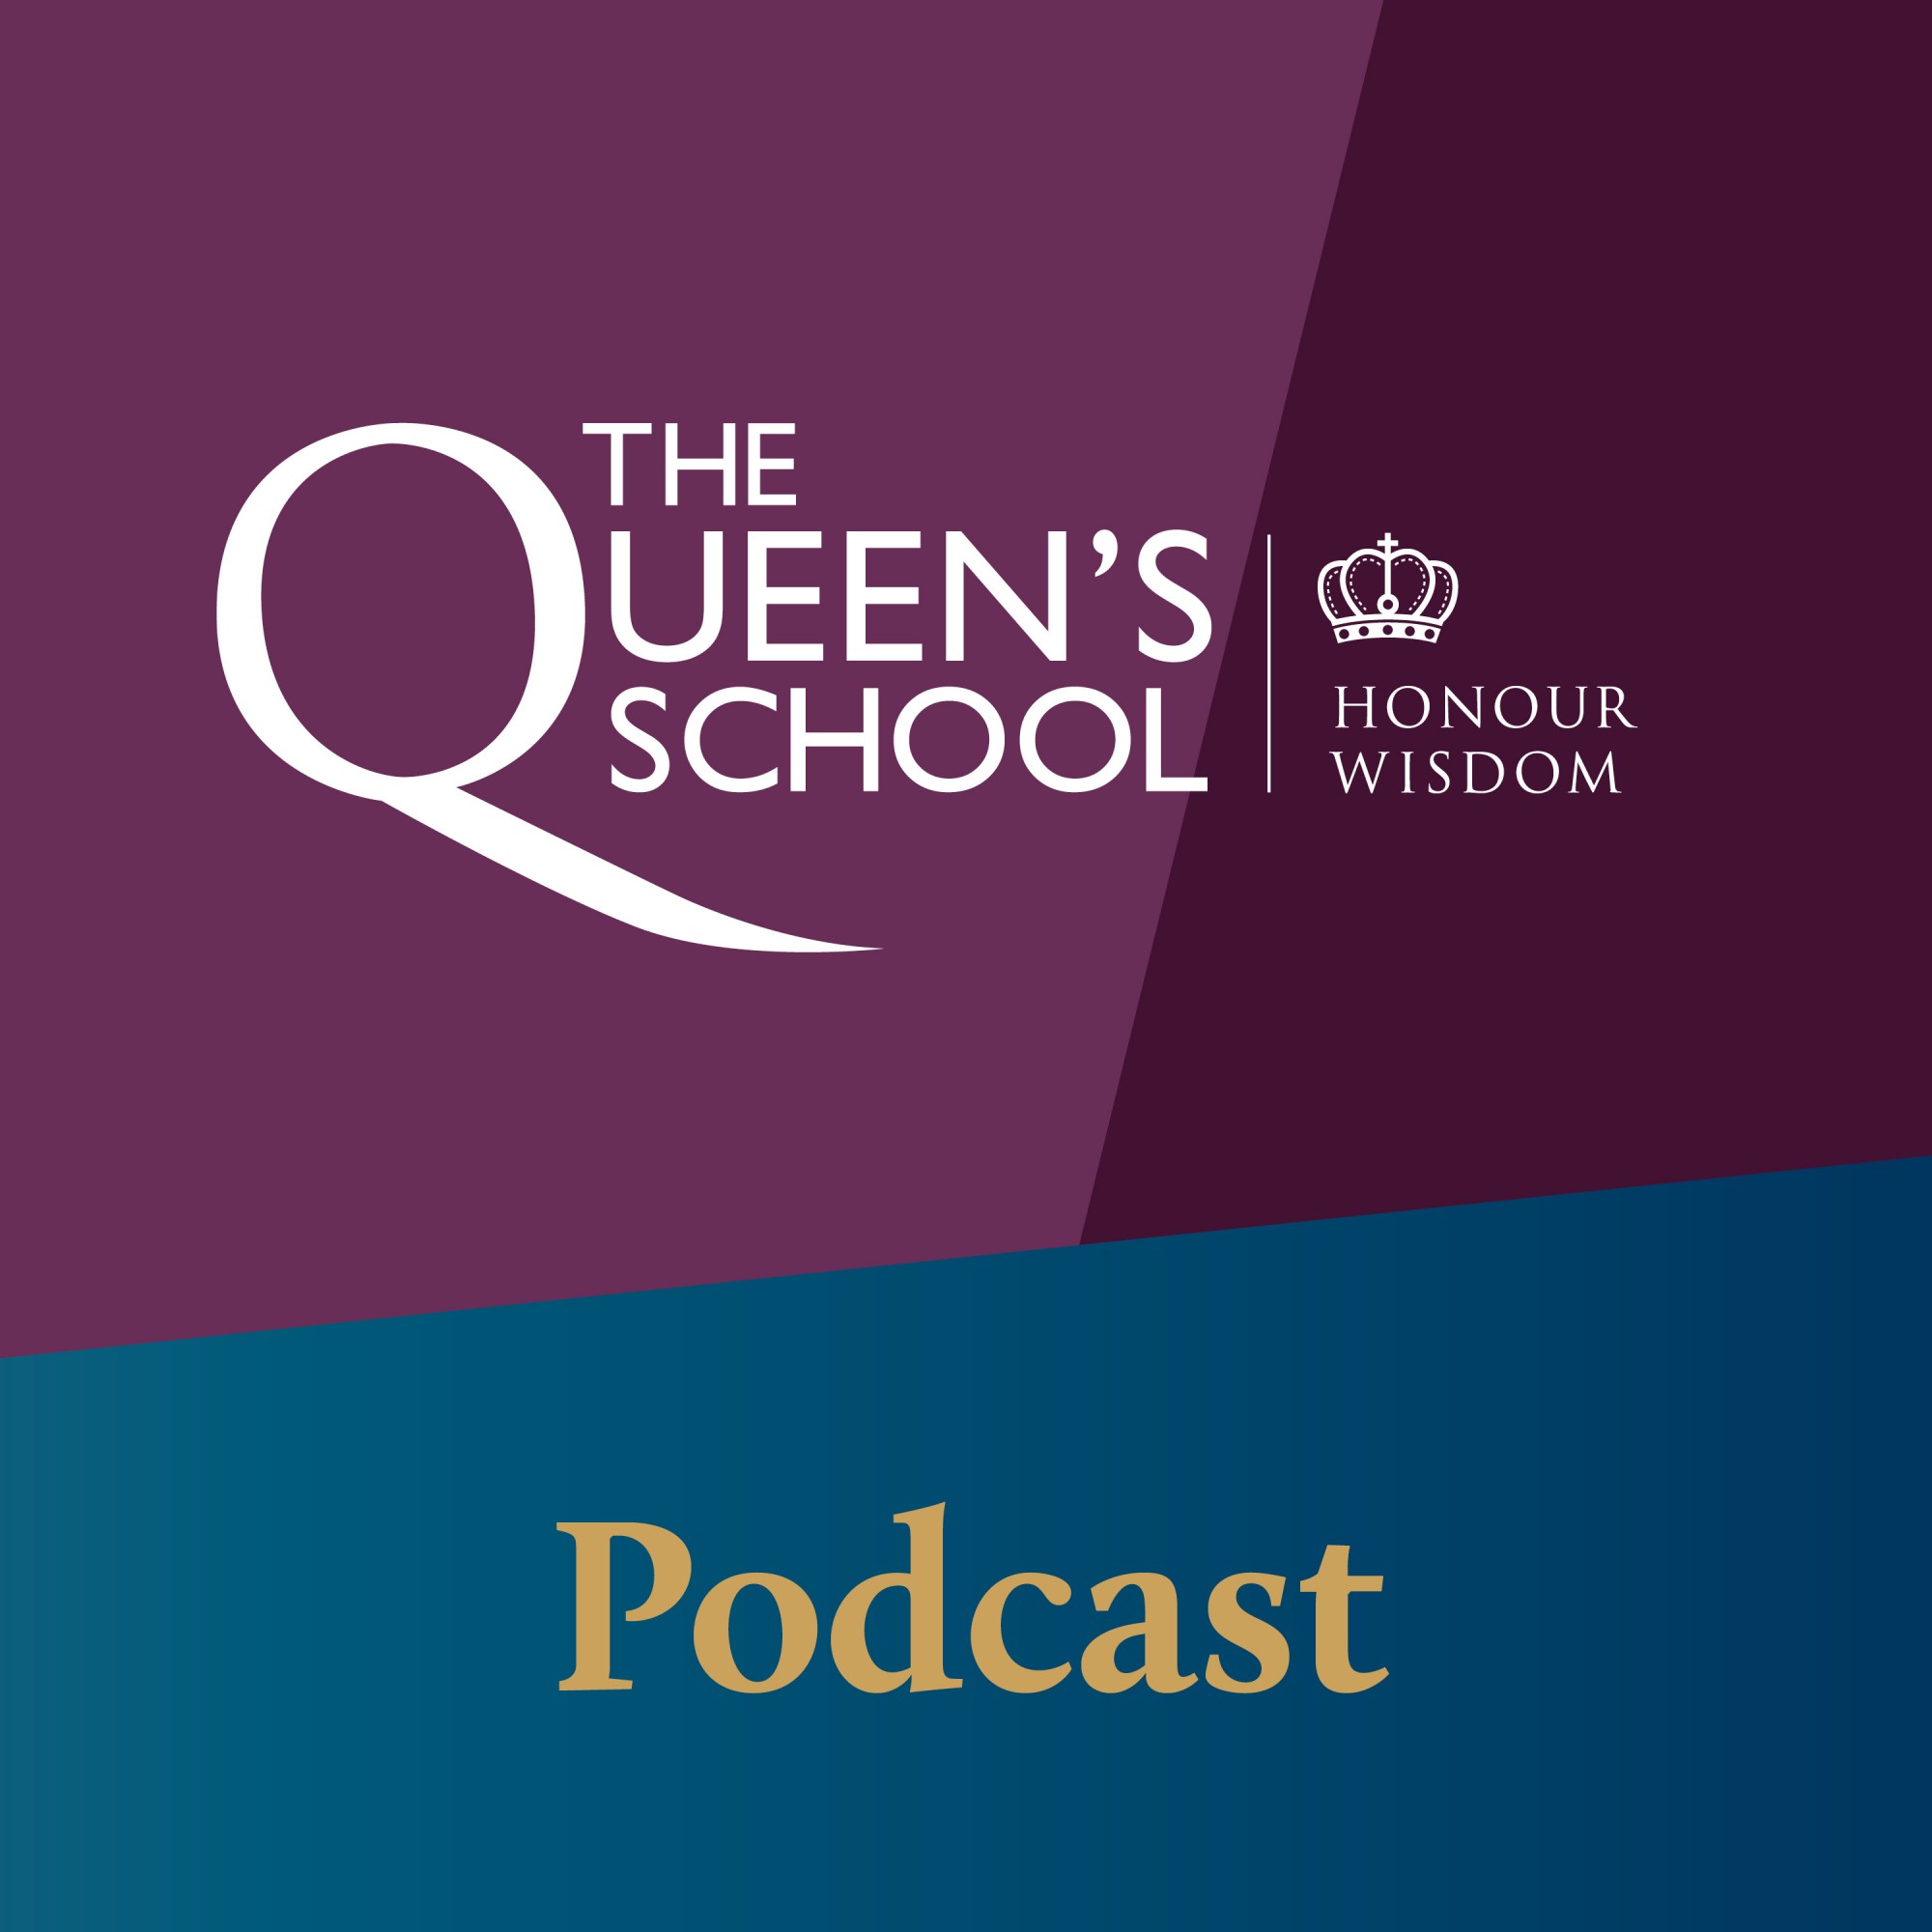 The Queen's School Podcast